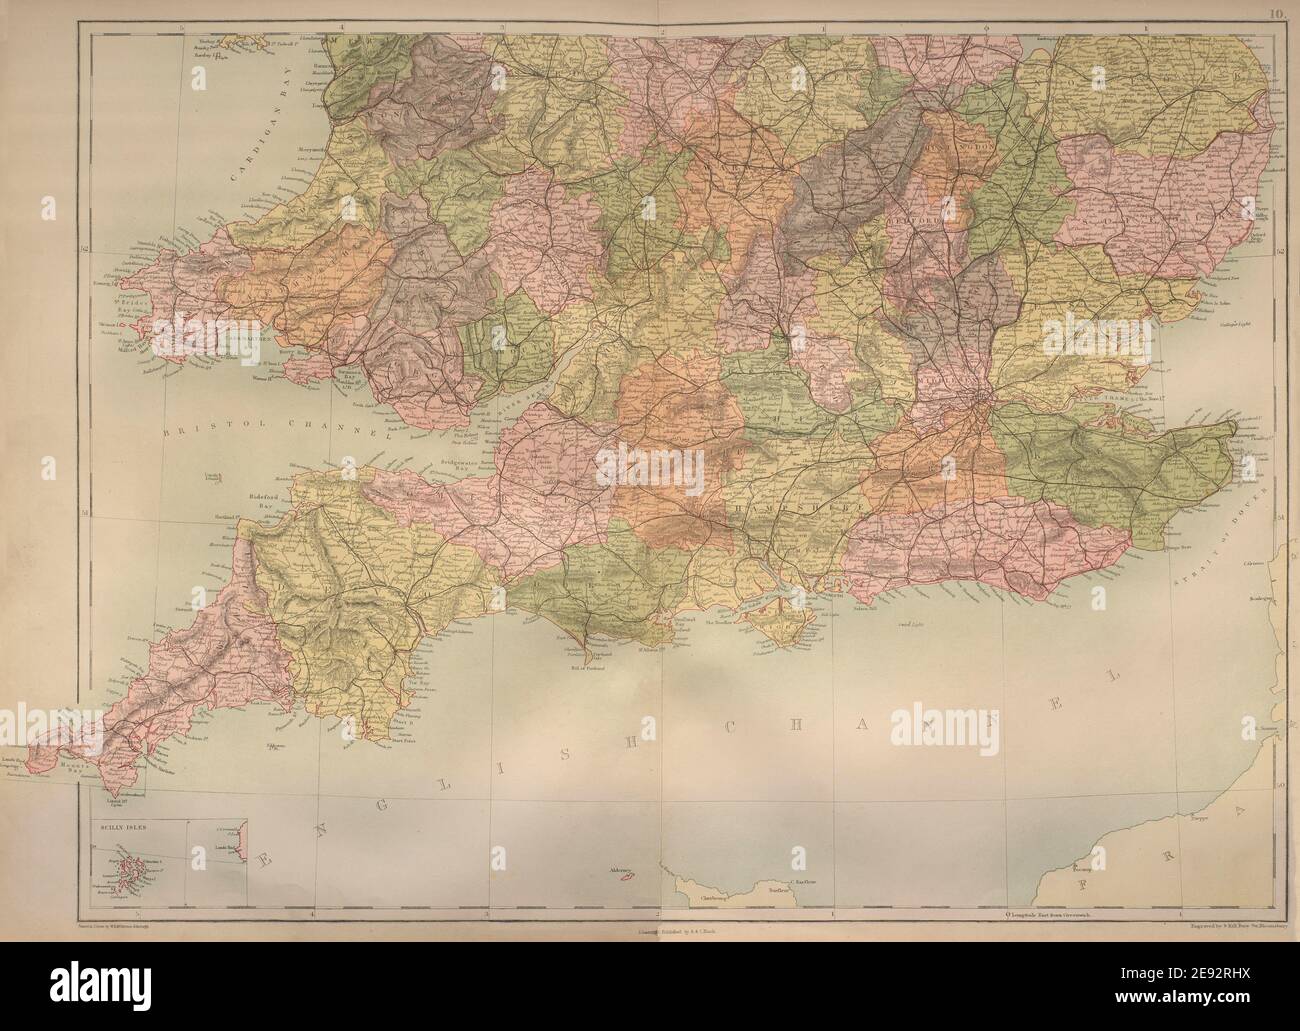 Feuille Angleterre et pays de Galles du Sud. Comtés et chemins de fer. BARTHOLOMEW 1870 vieille carte Banque D'Images